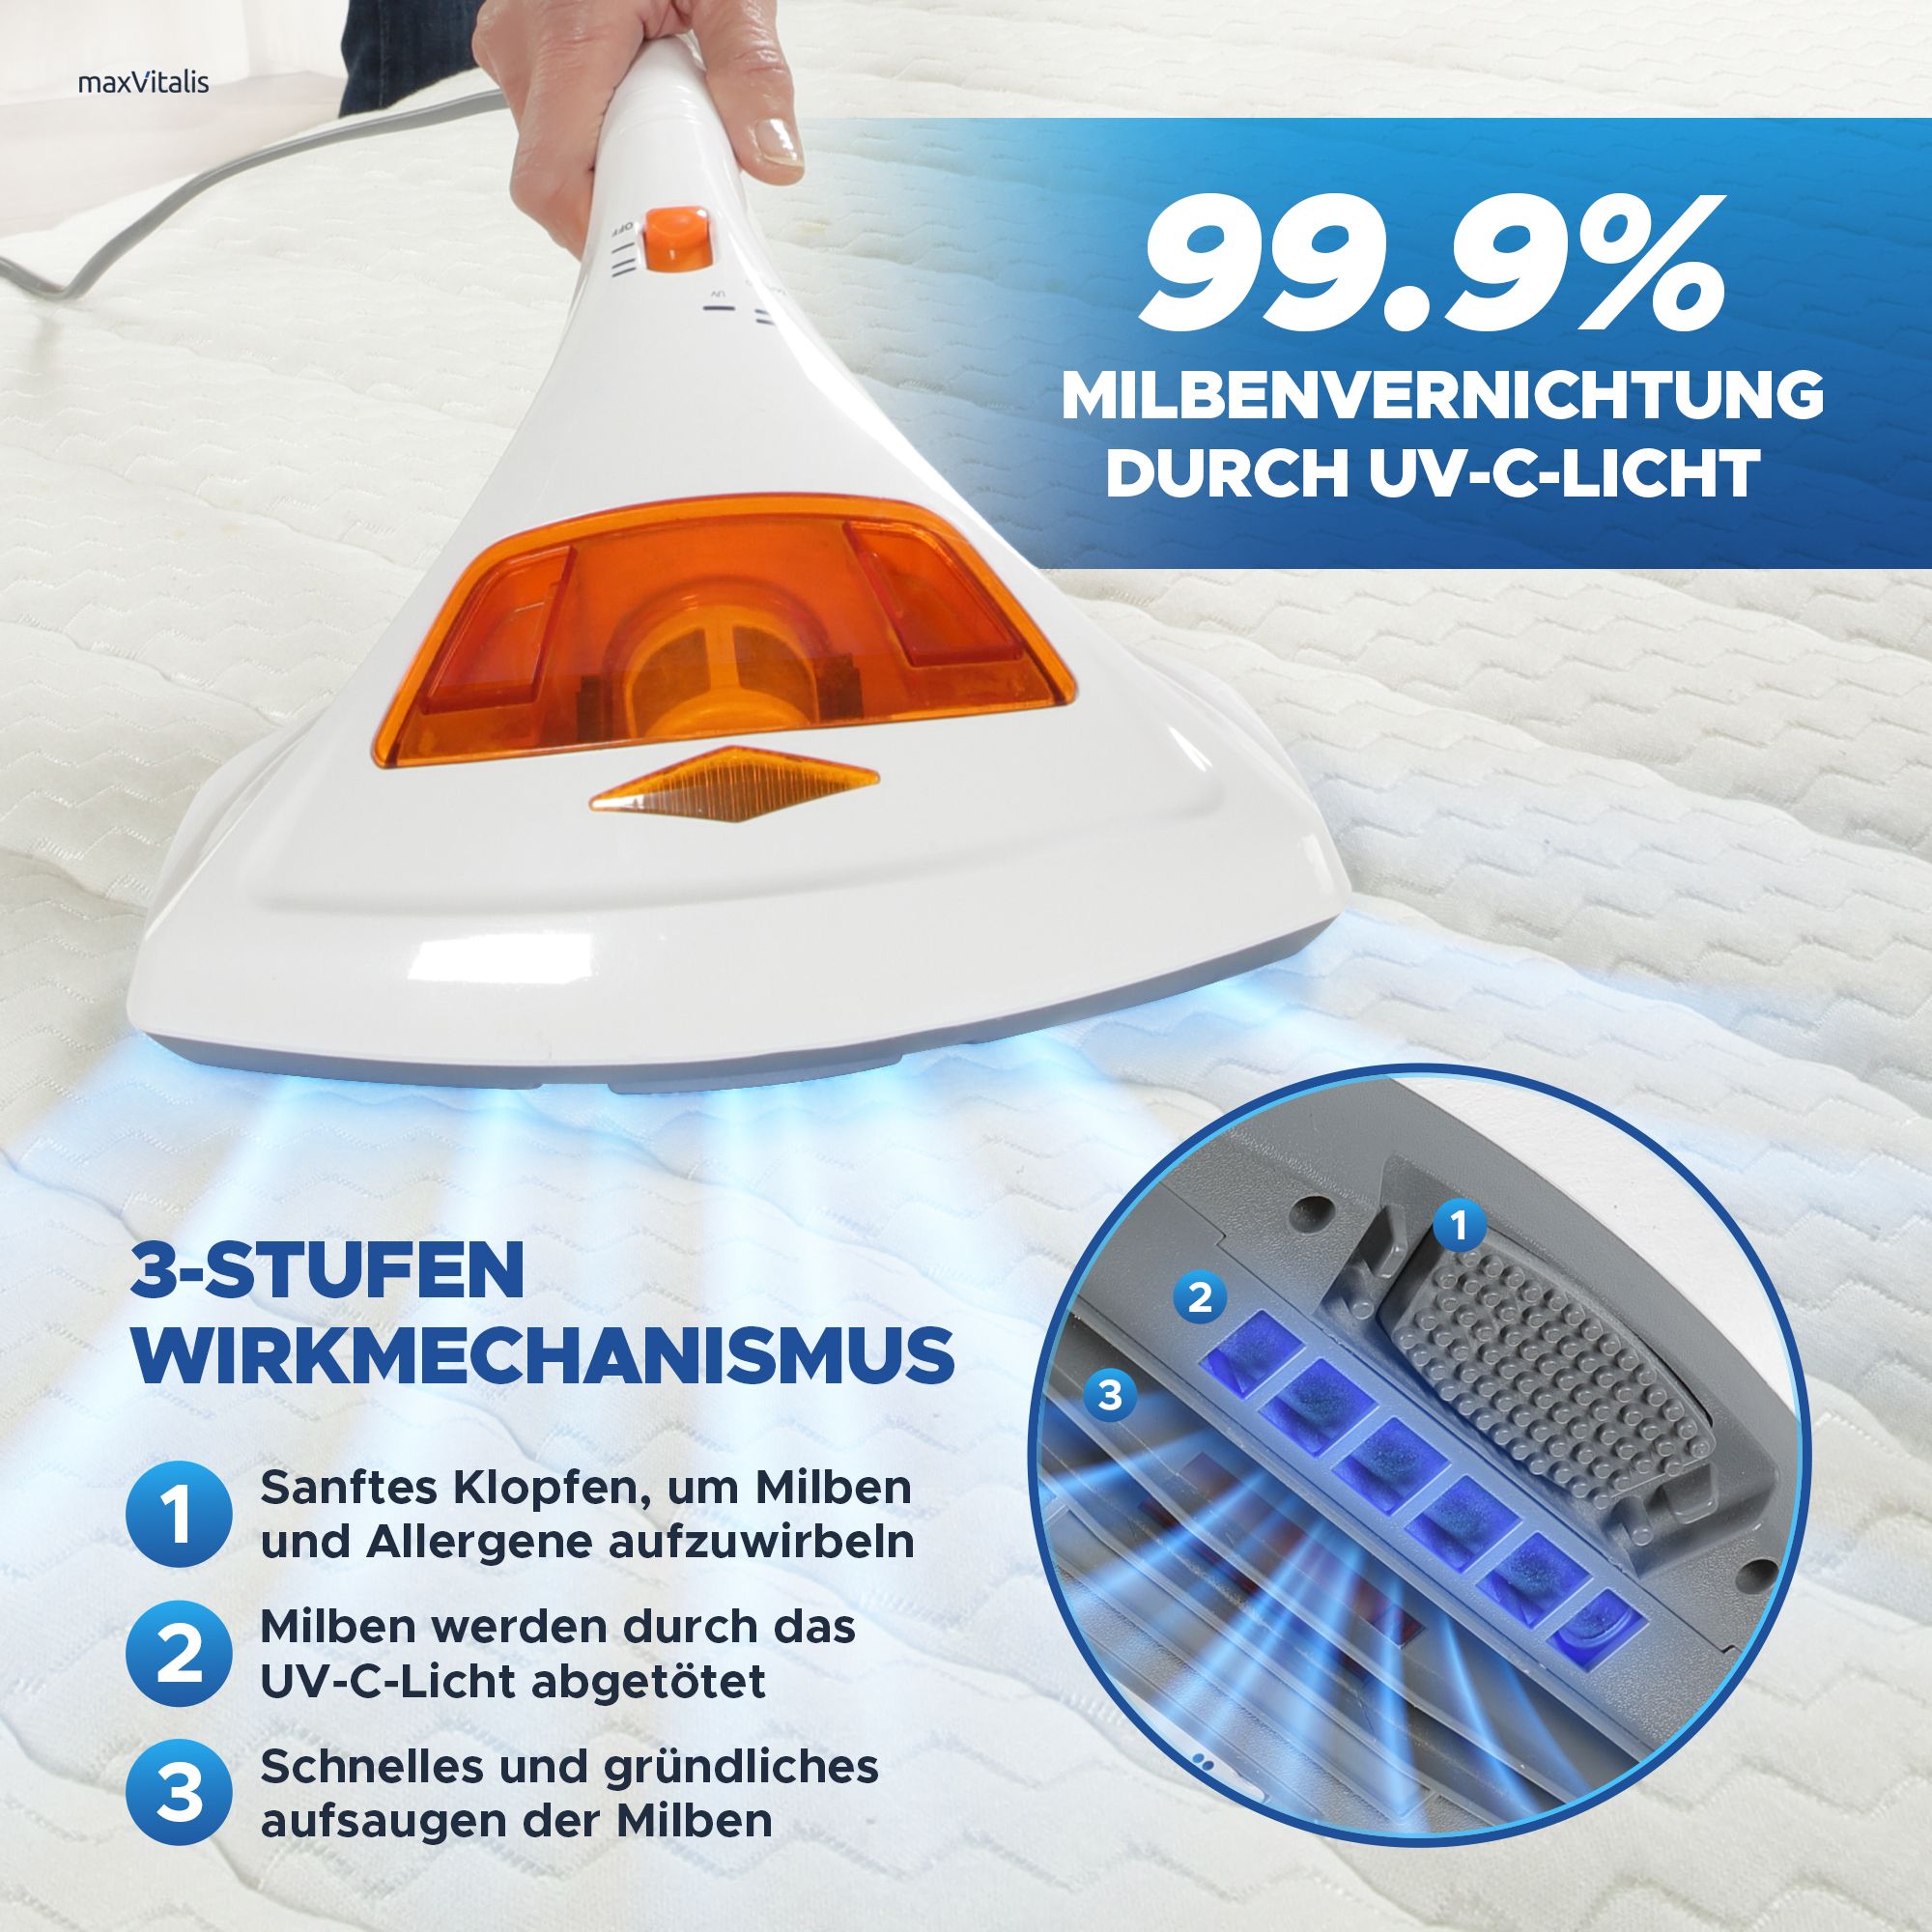 aktimeo Milben-Handstaubsauger UV-C Licht, 99,9% Sterilisation u. Reinigung, Matratzensauger